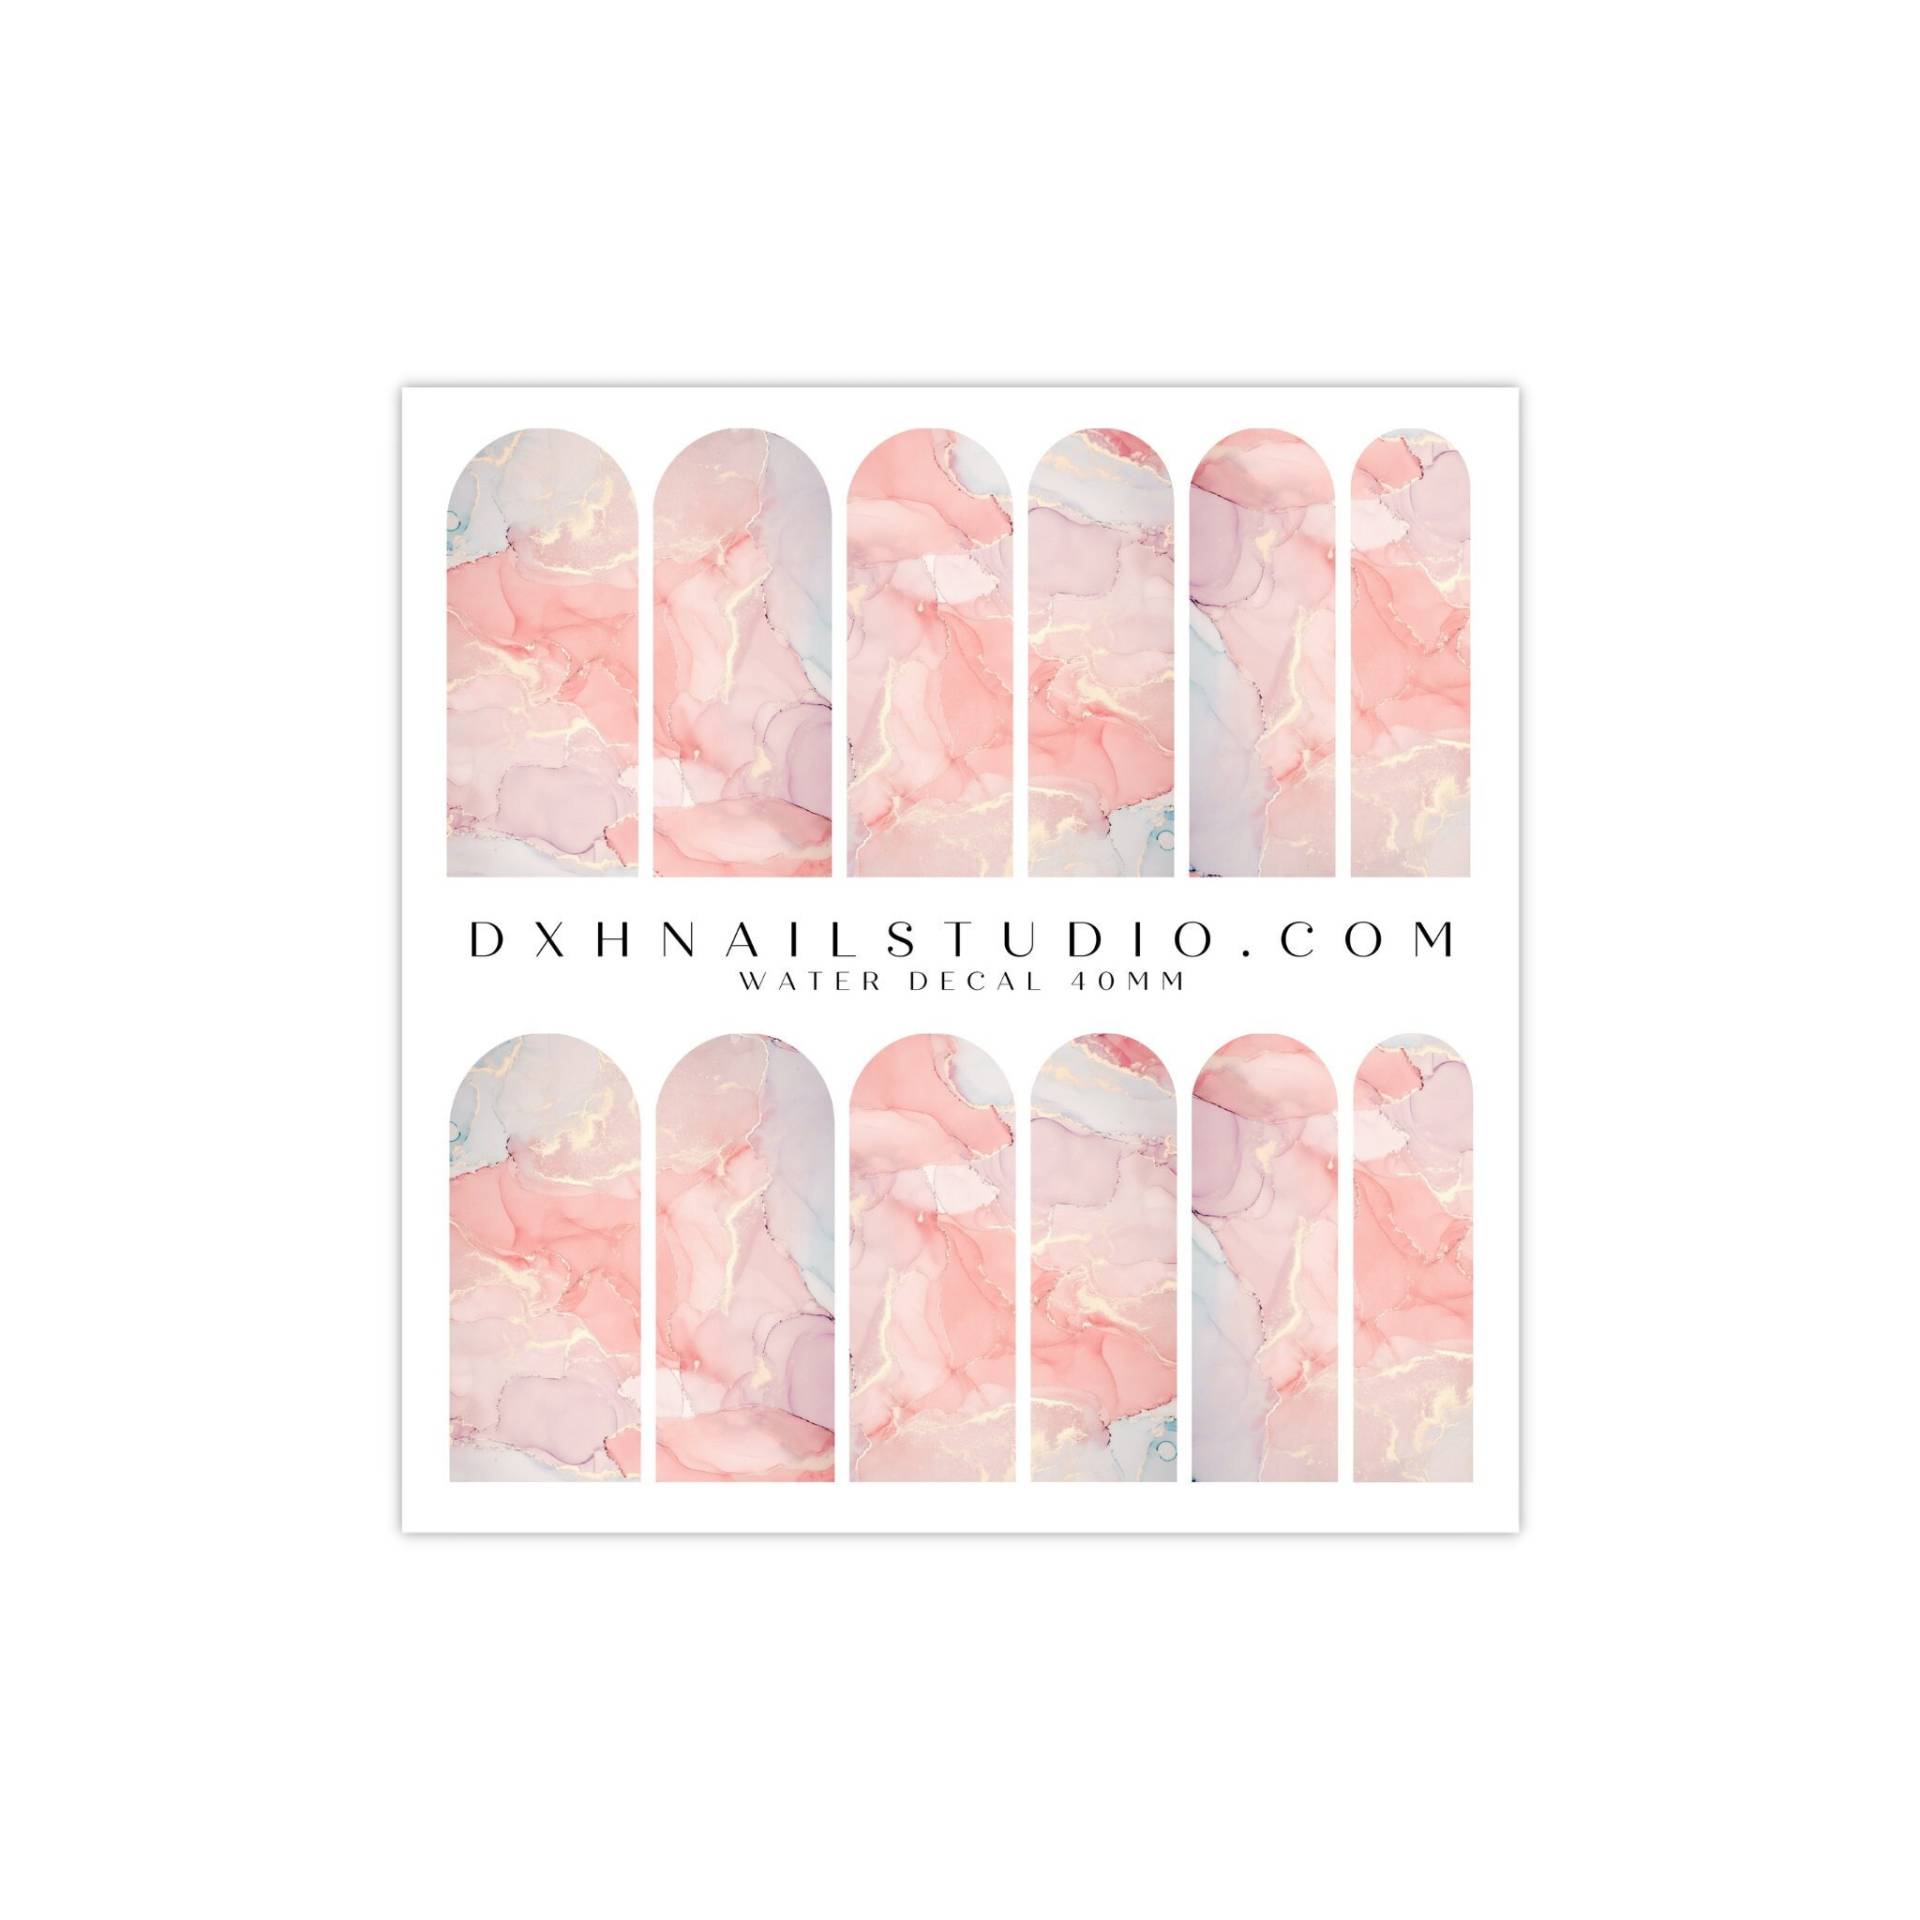 Blush Pink Quartz Marmor Nagel Abziehbilder - Wassertransfer Nail Wraps Für Acryl Gel X Press On Extensions Zubehör von DXHNAILCO